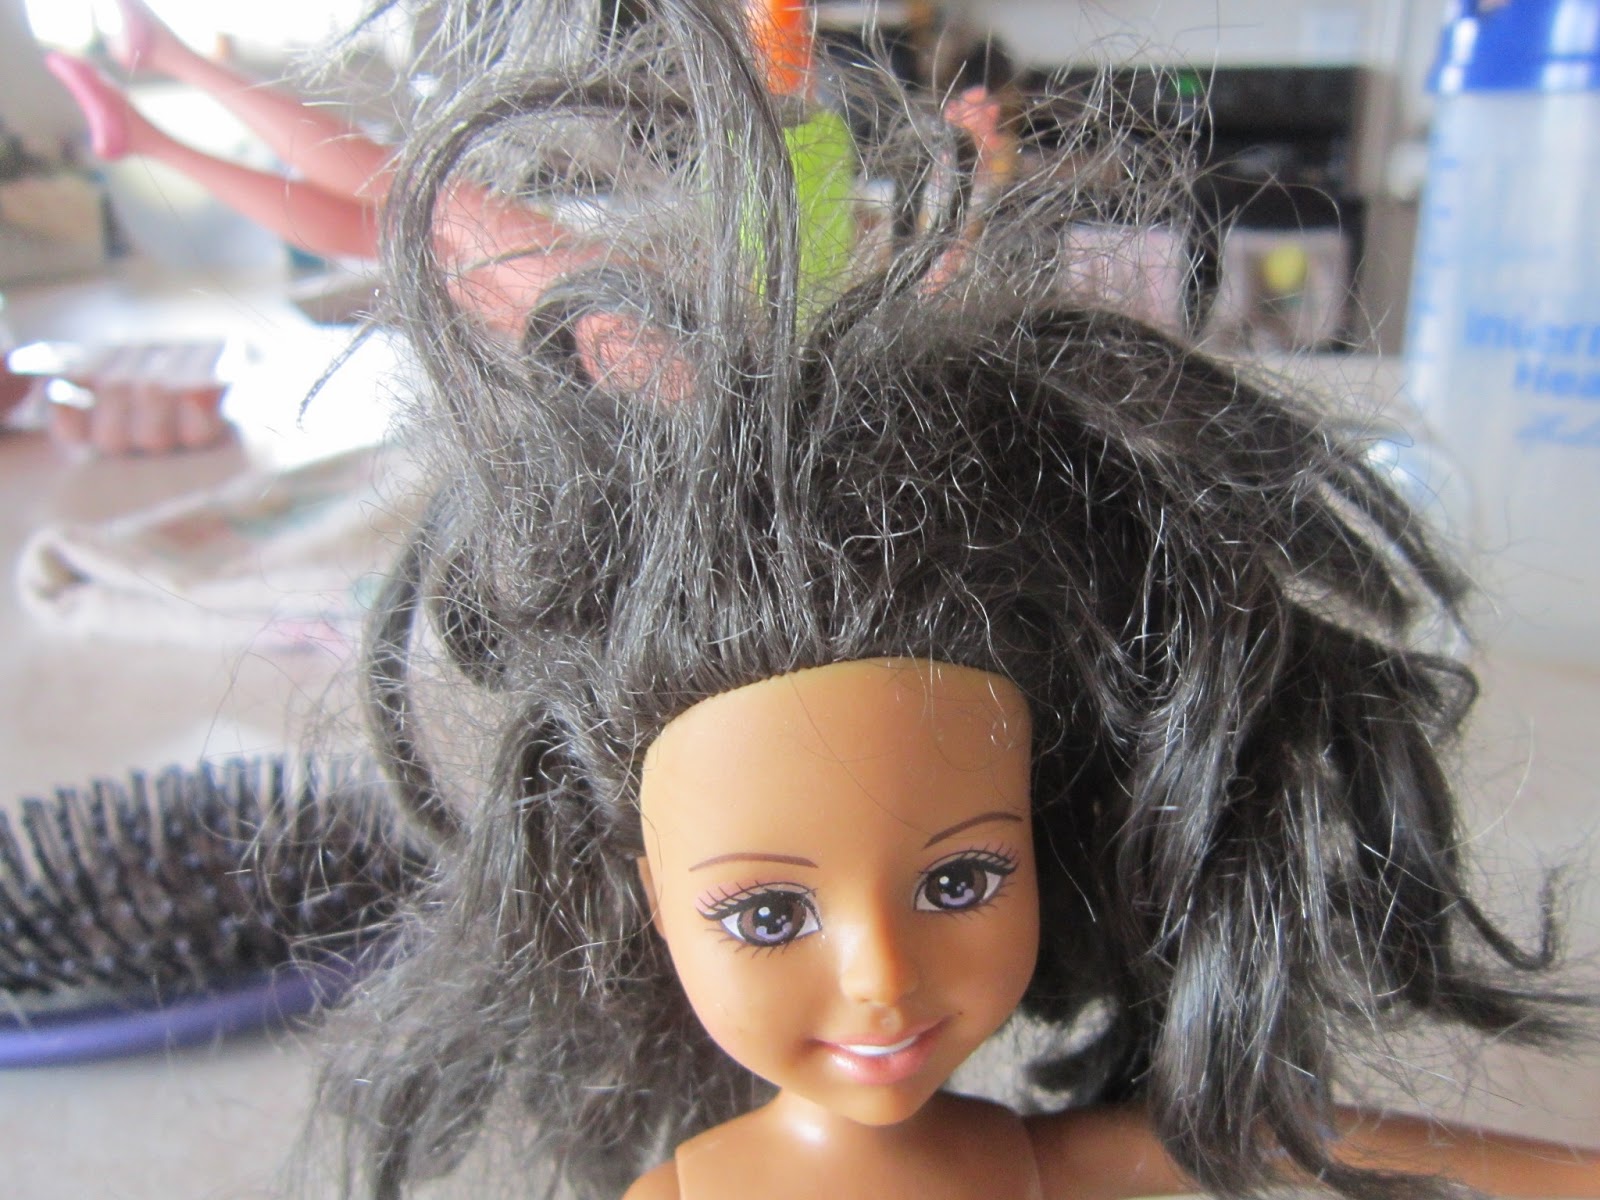 Diana Tries It Ratty Doll Hair Fix